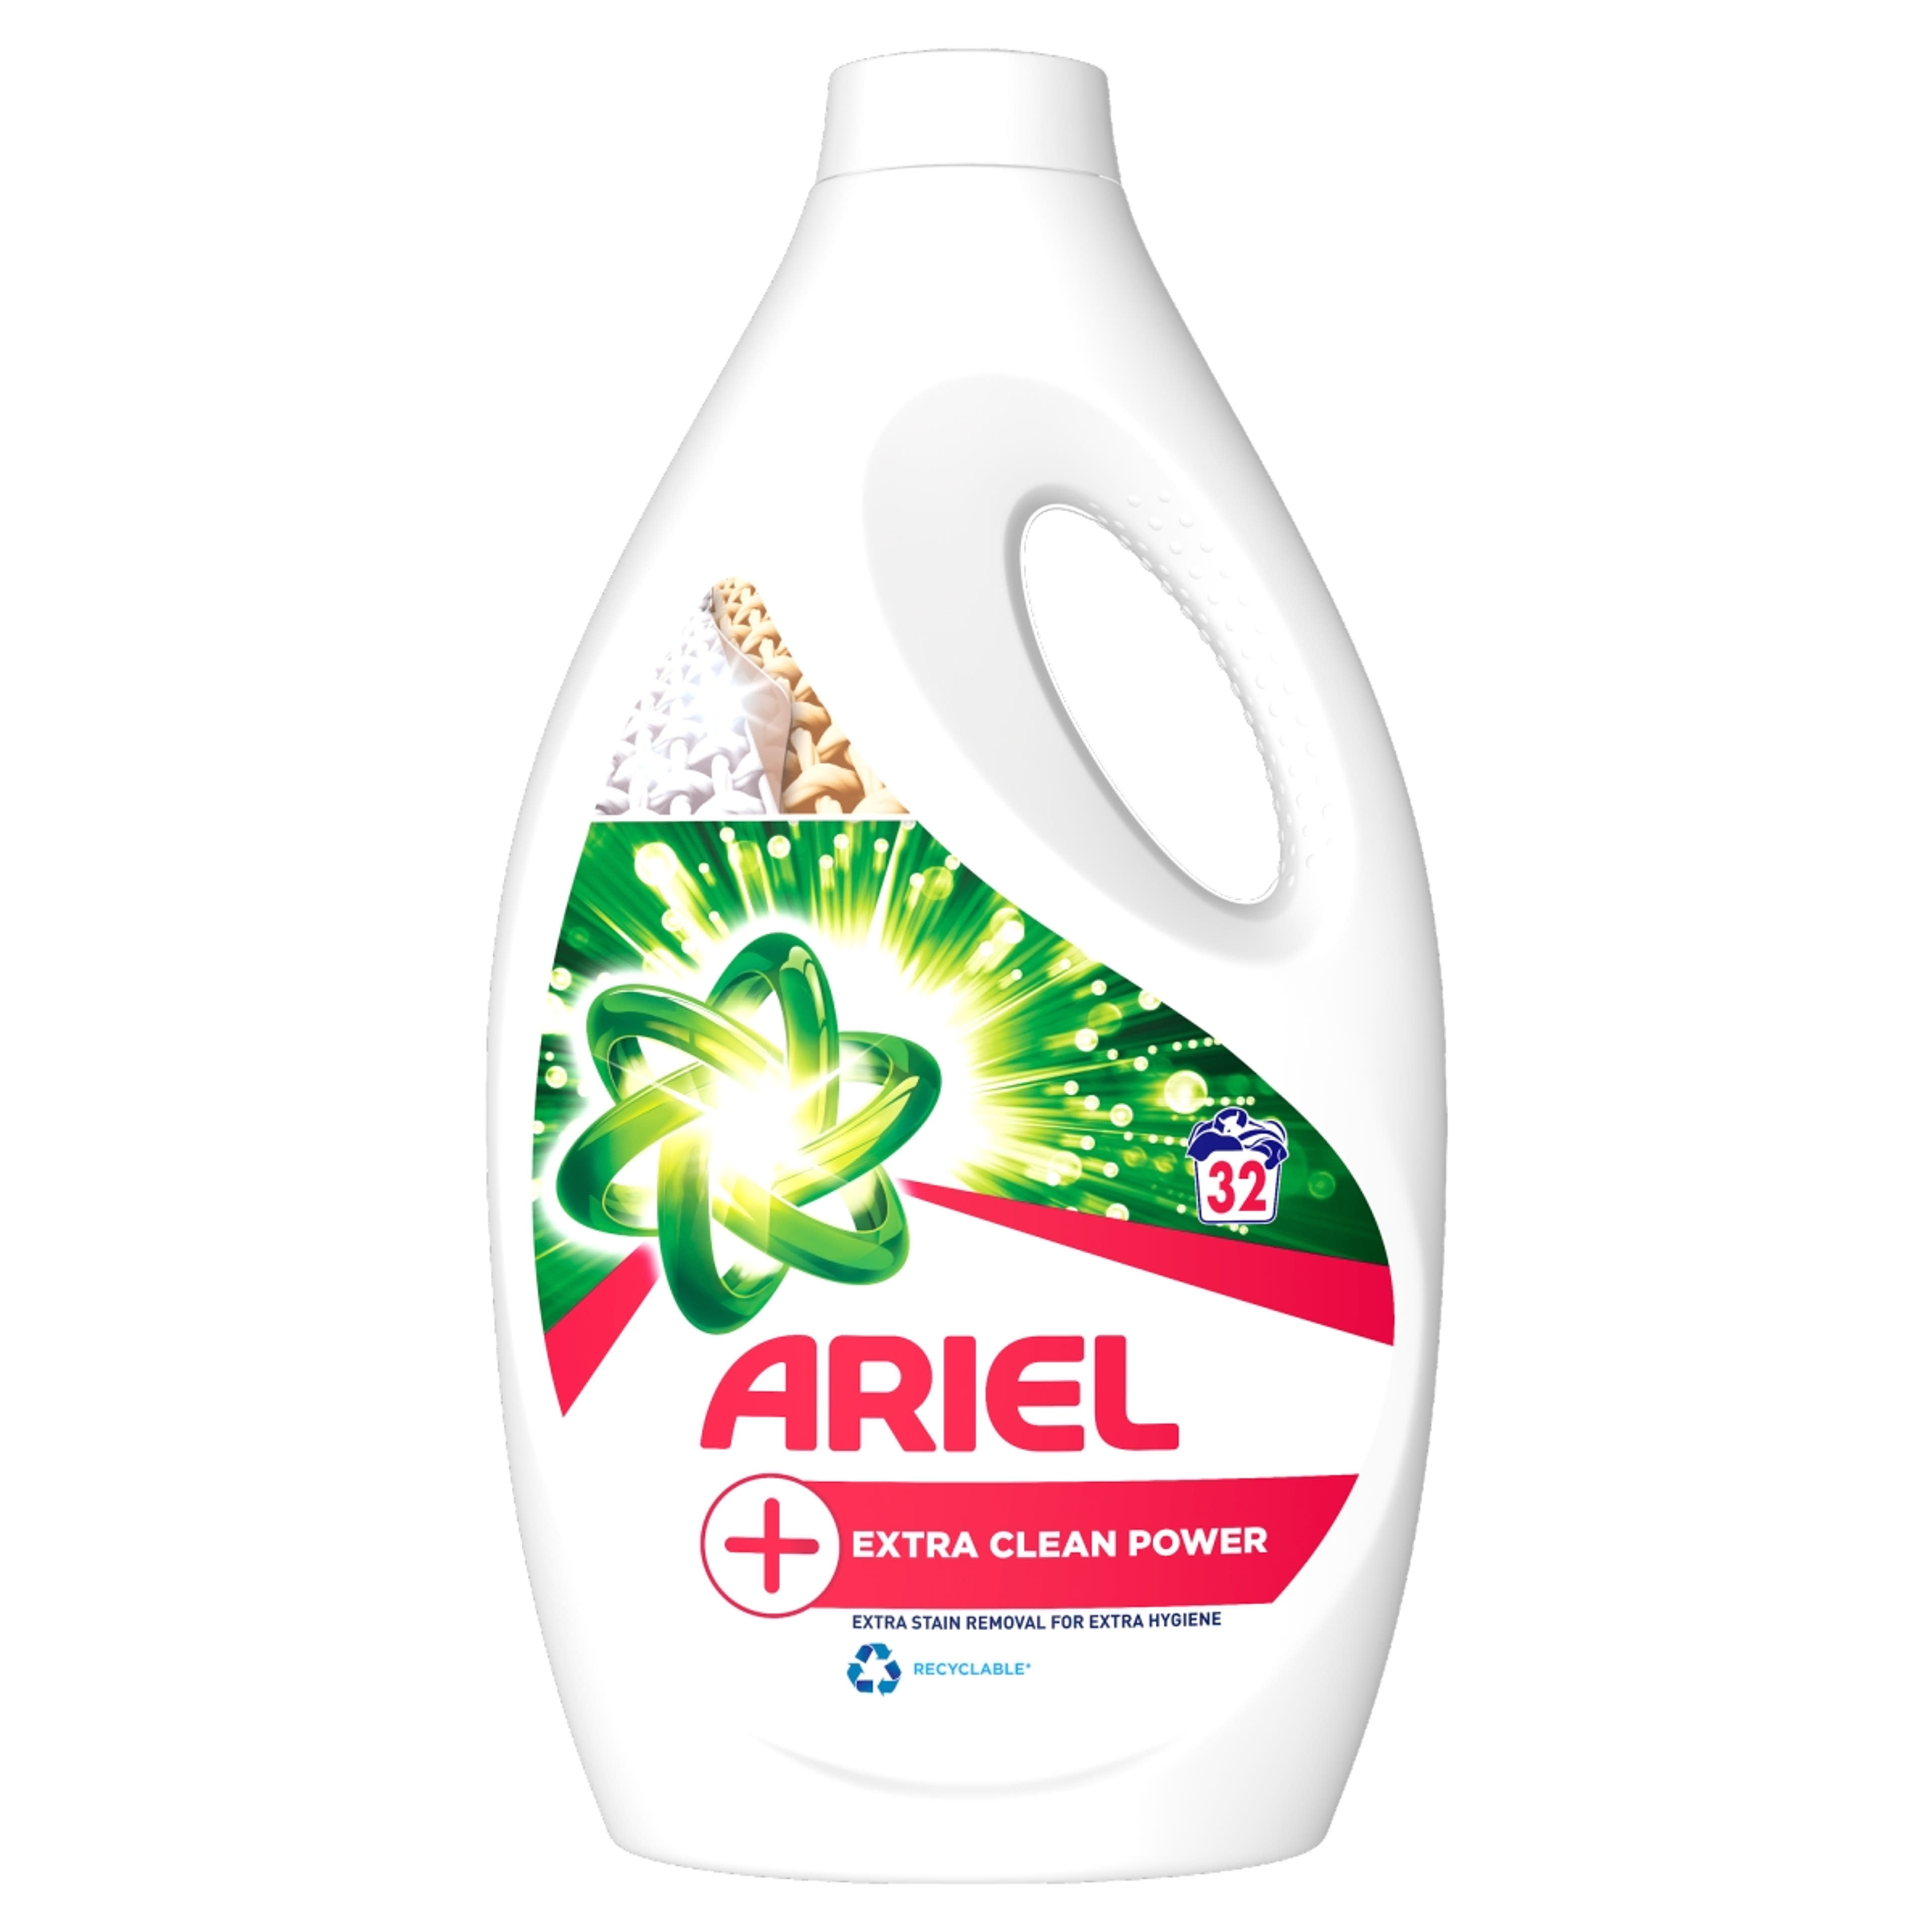 Ariel +Extra Clean Power folyékony mosószer, 32 mosáshoz - 1760 ml